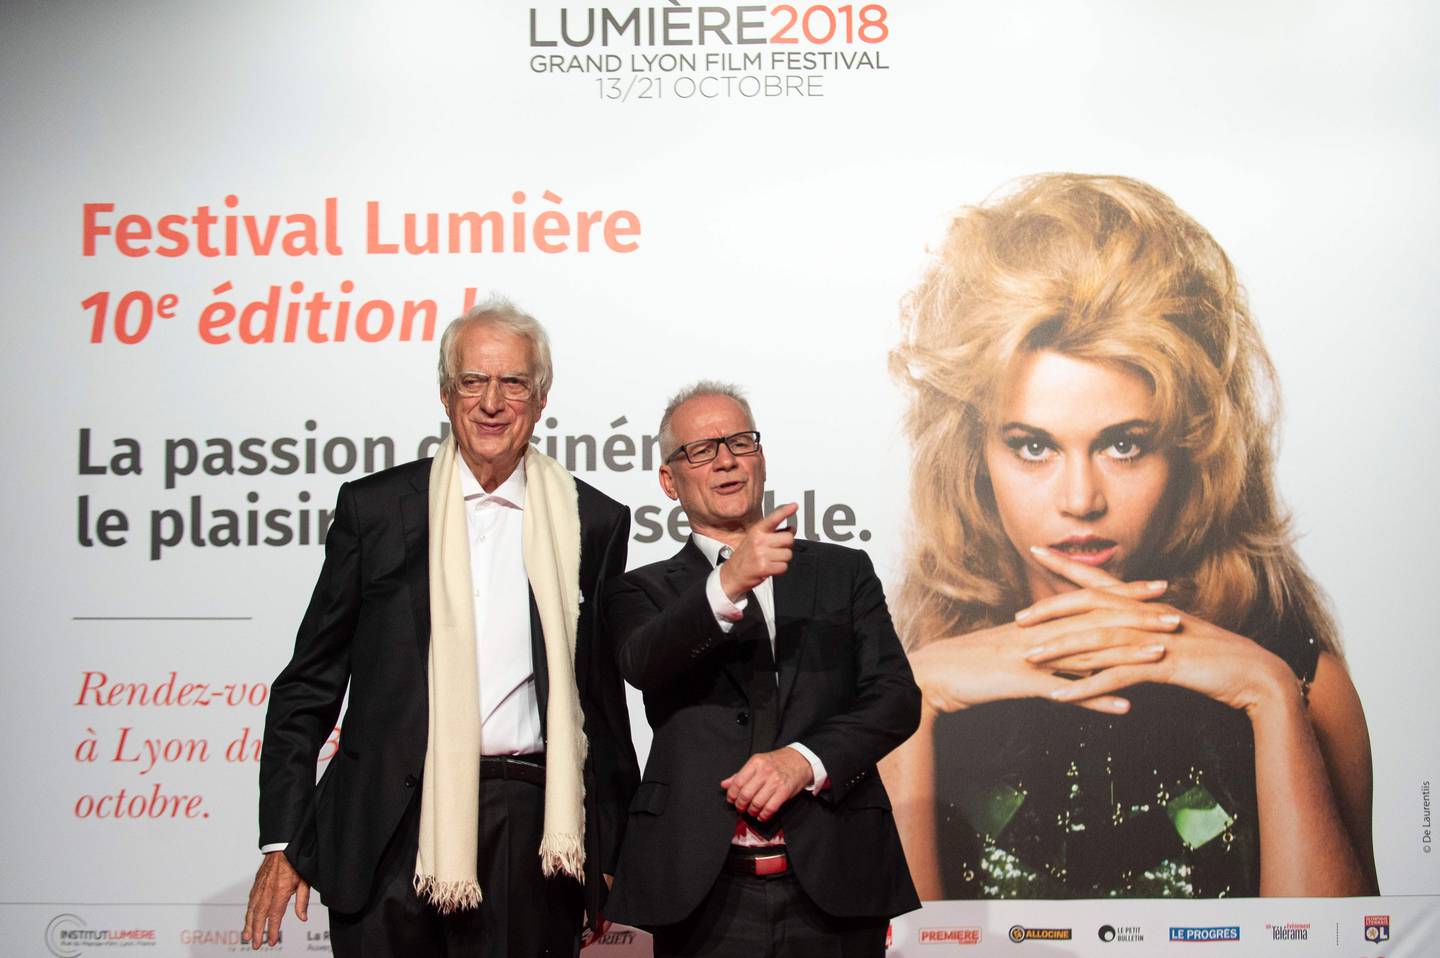 Filmskaperen Bertrand Tavernier (til venstre) er død. Her sammen med Cannes-festivalens programsjef Thierry Fremaux foran sin egen Lumiere-festival.